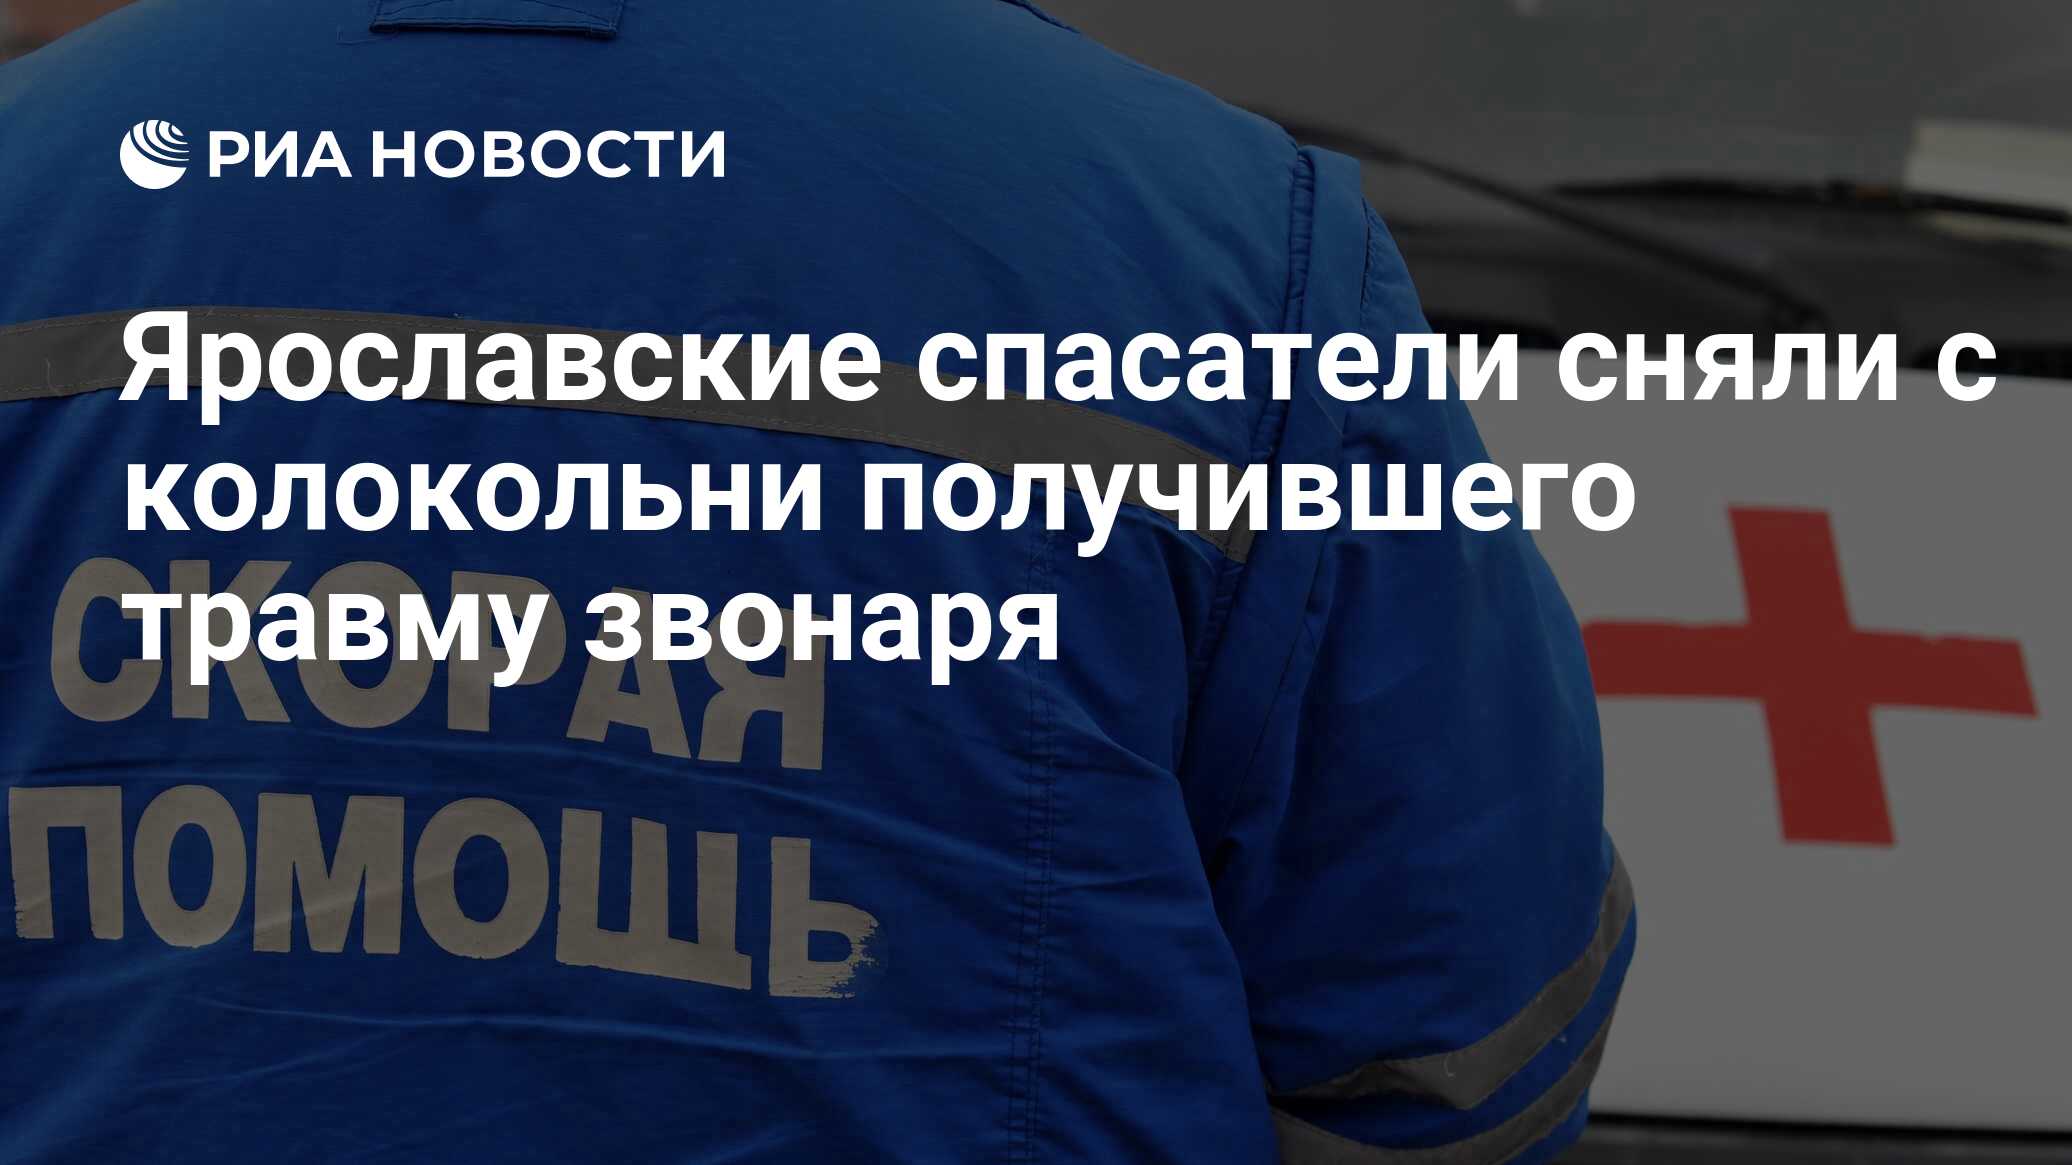 Ярославские спасатели сняли с колокольни получившего травму звонаря .